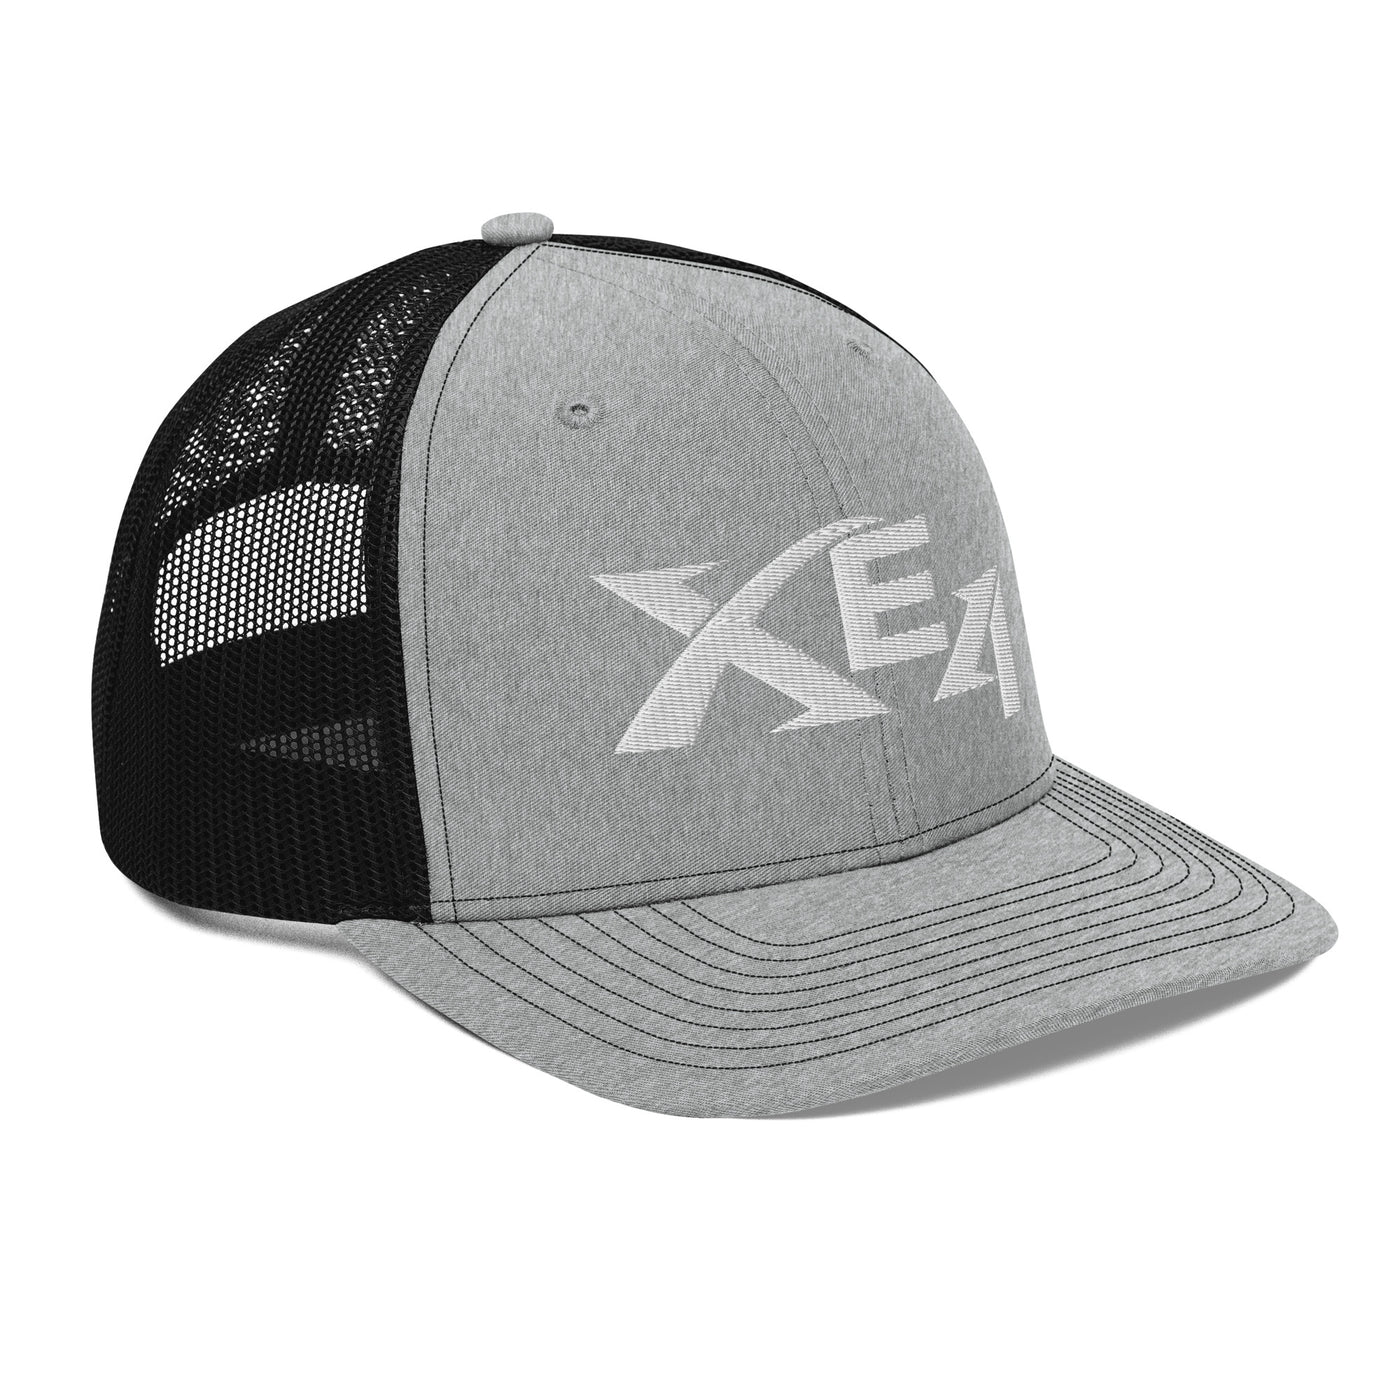 XE4 Trucker Cap